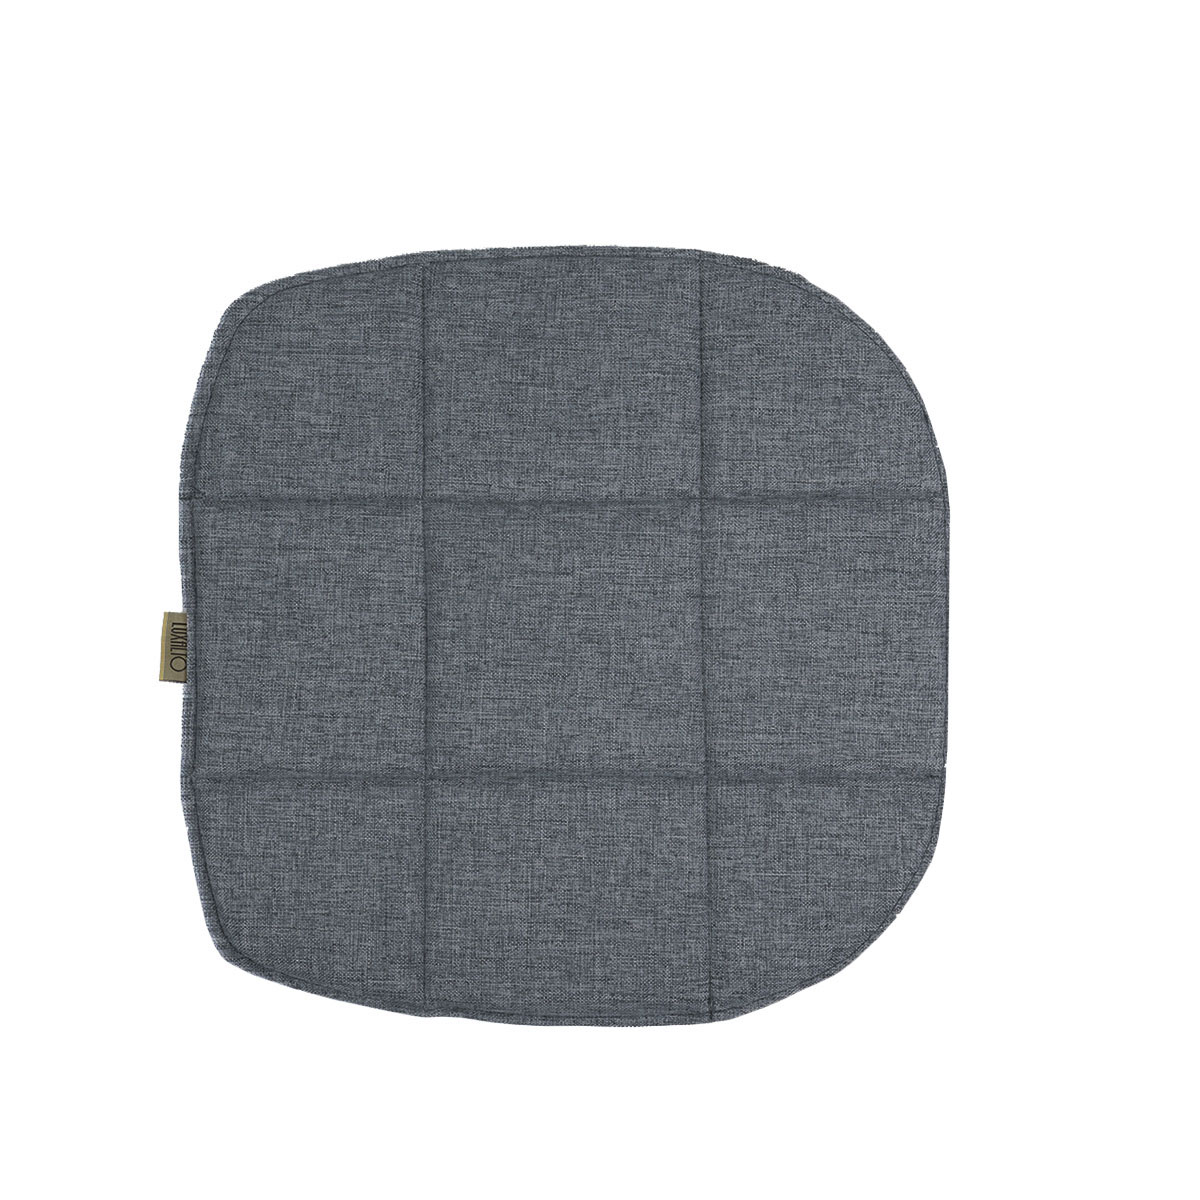 Подушка на стул LuxAlto для модели Eames/Aspen, рогожка графитово-серый (Laguna 997), 4 шт.